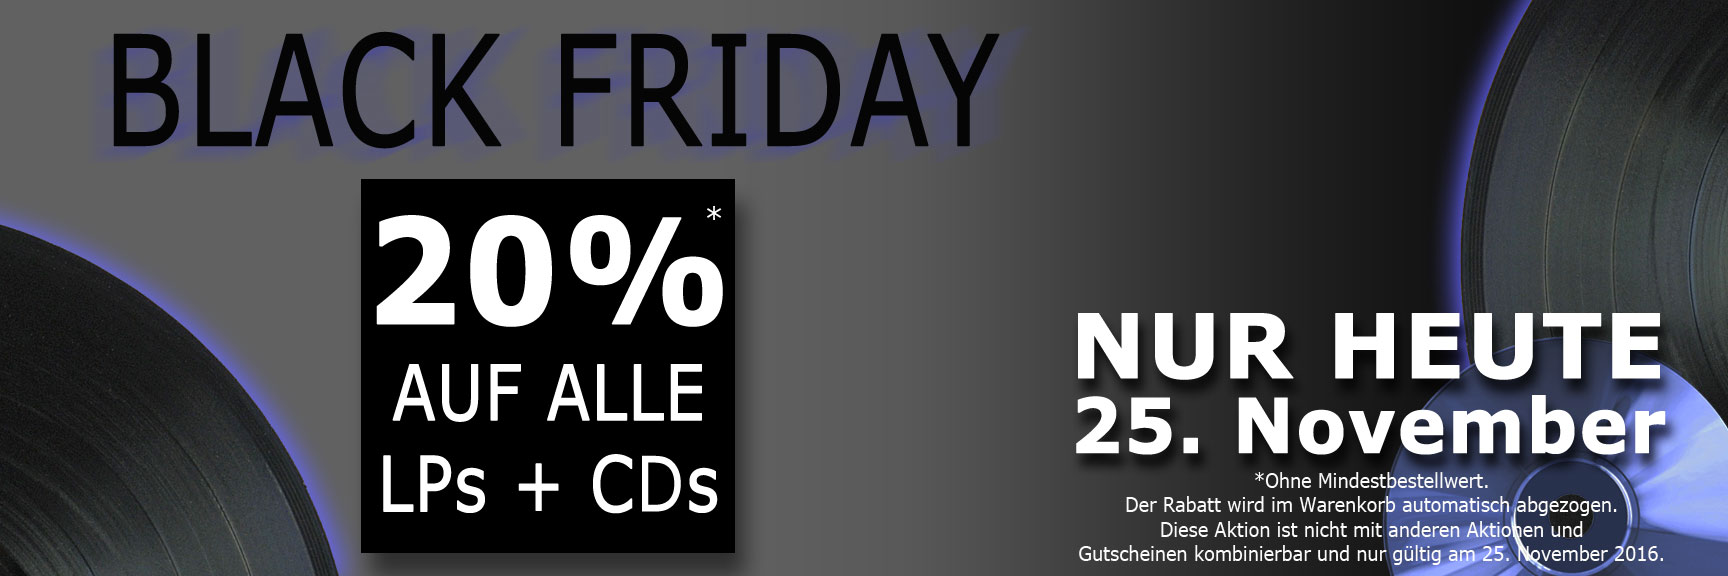 BLACK FRIDAY. 20% auf alle LPs + CDs